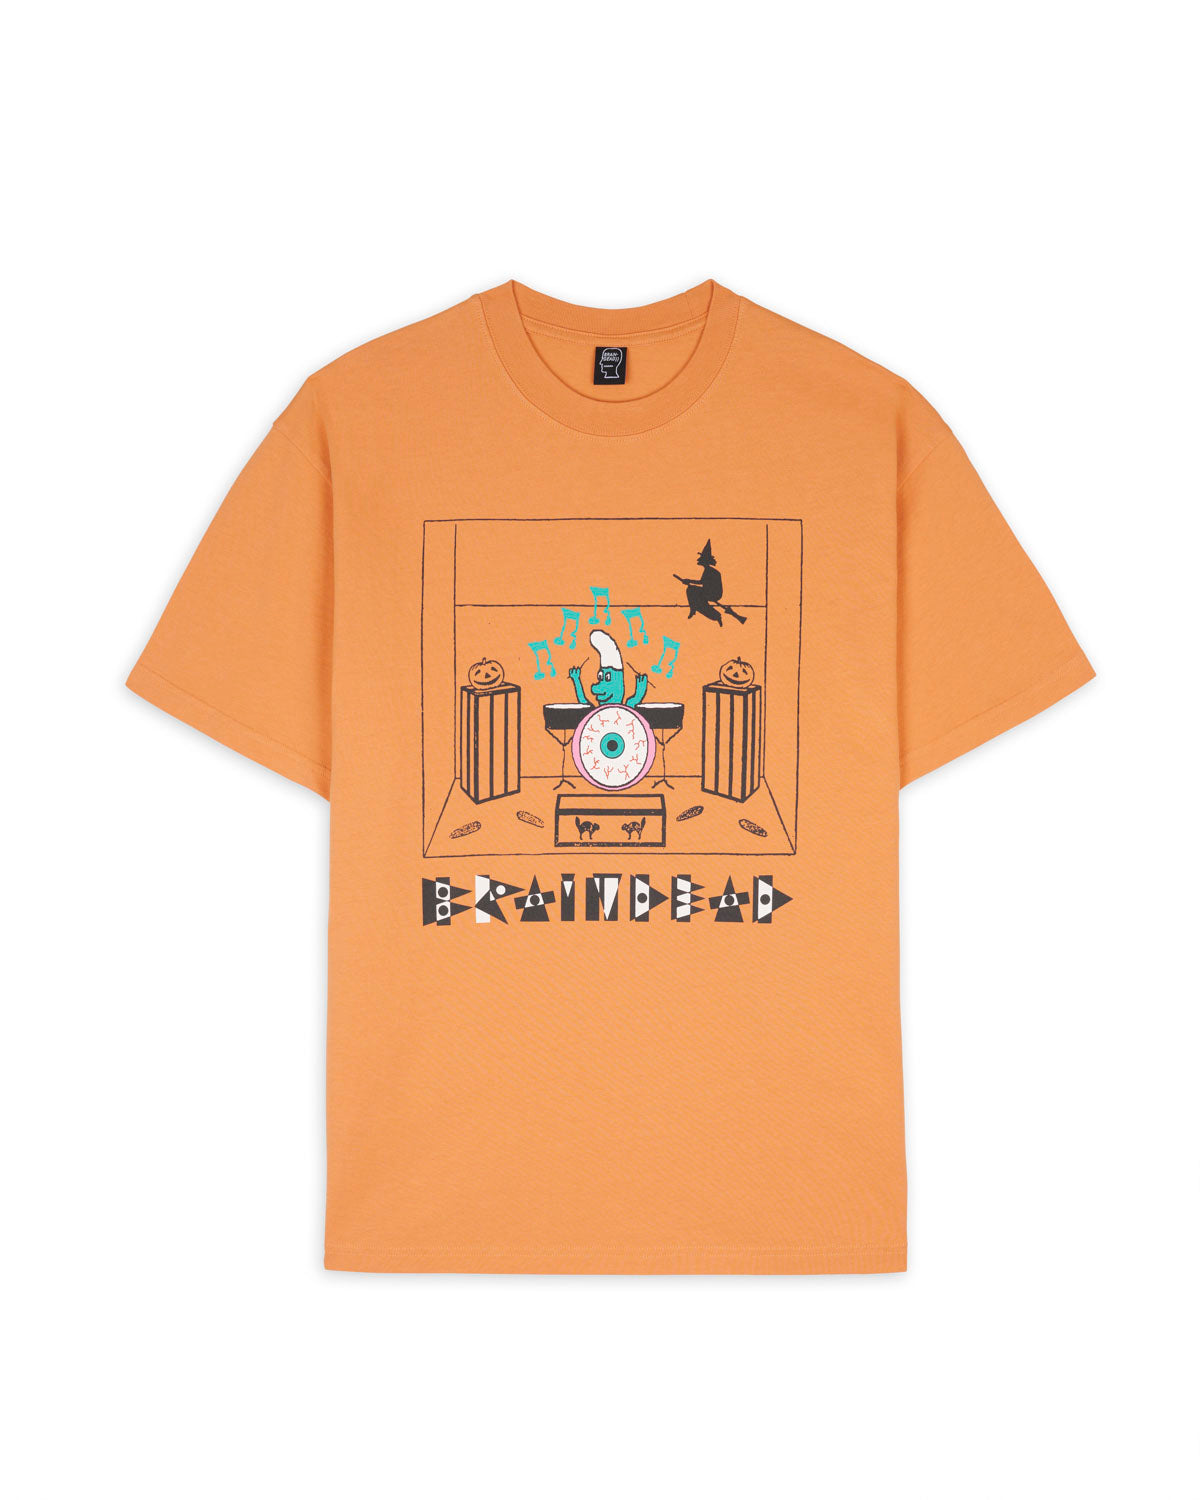 Drummer Boy T-Shirt - Peach 1